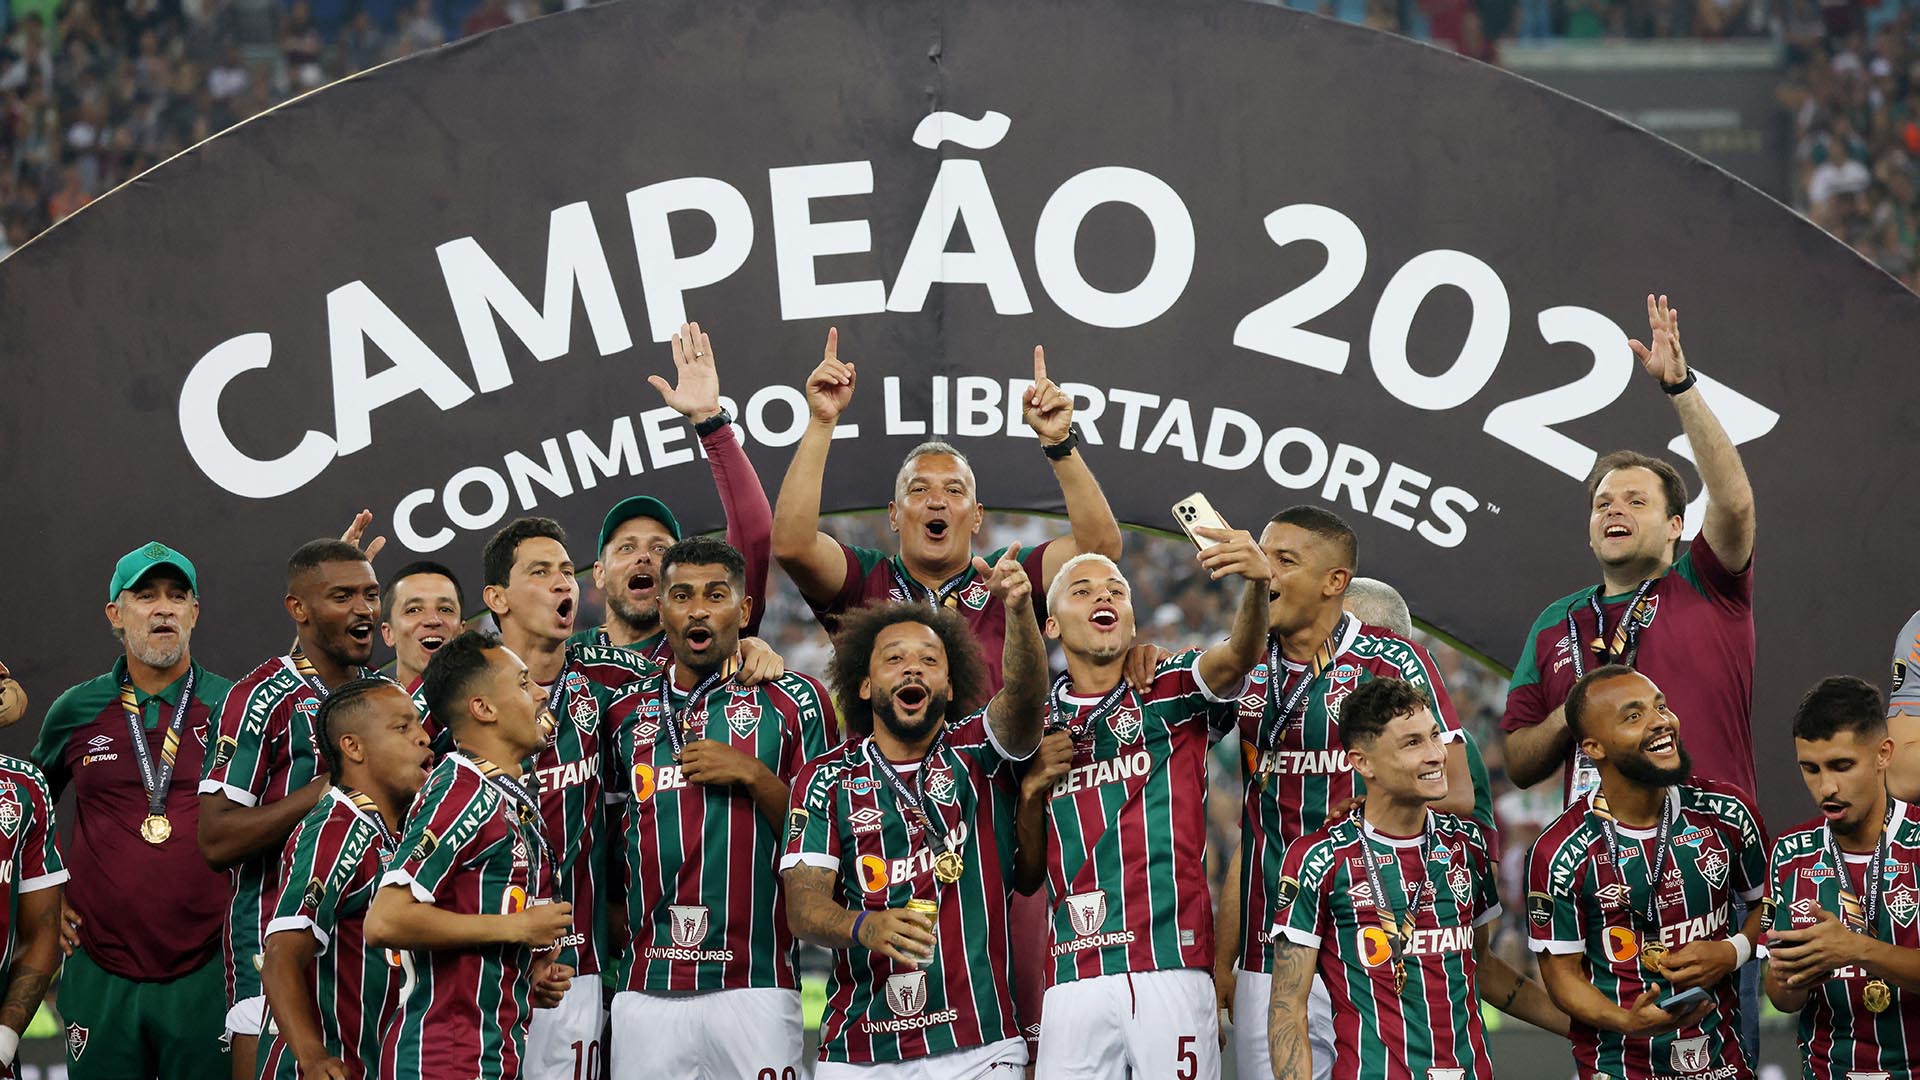 Fluminense defenderá el título y otros como Flamengo, Palmeiras, Atlético Mineiro o Grêmio intentarán repetir éxitos pasados. Una amplia variedad de clubes y, cada uno de ellos, capaz de superar a cualquier rival del exterior con garantías.